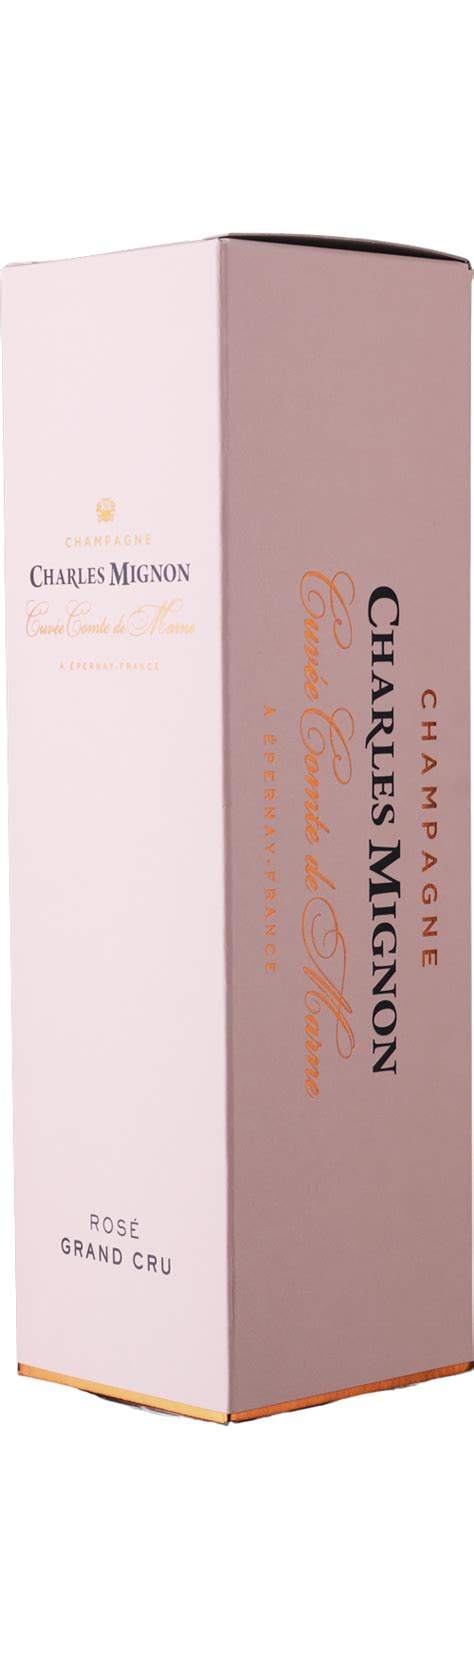 Køb Charles Mignon Cuvée Comte De Marne Rosé Grand Cru Champagne Brut